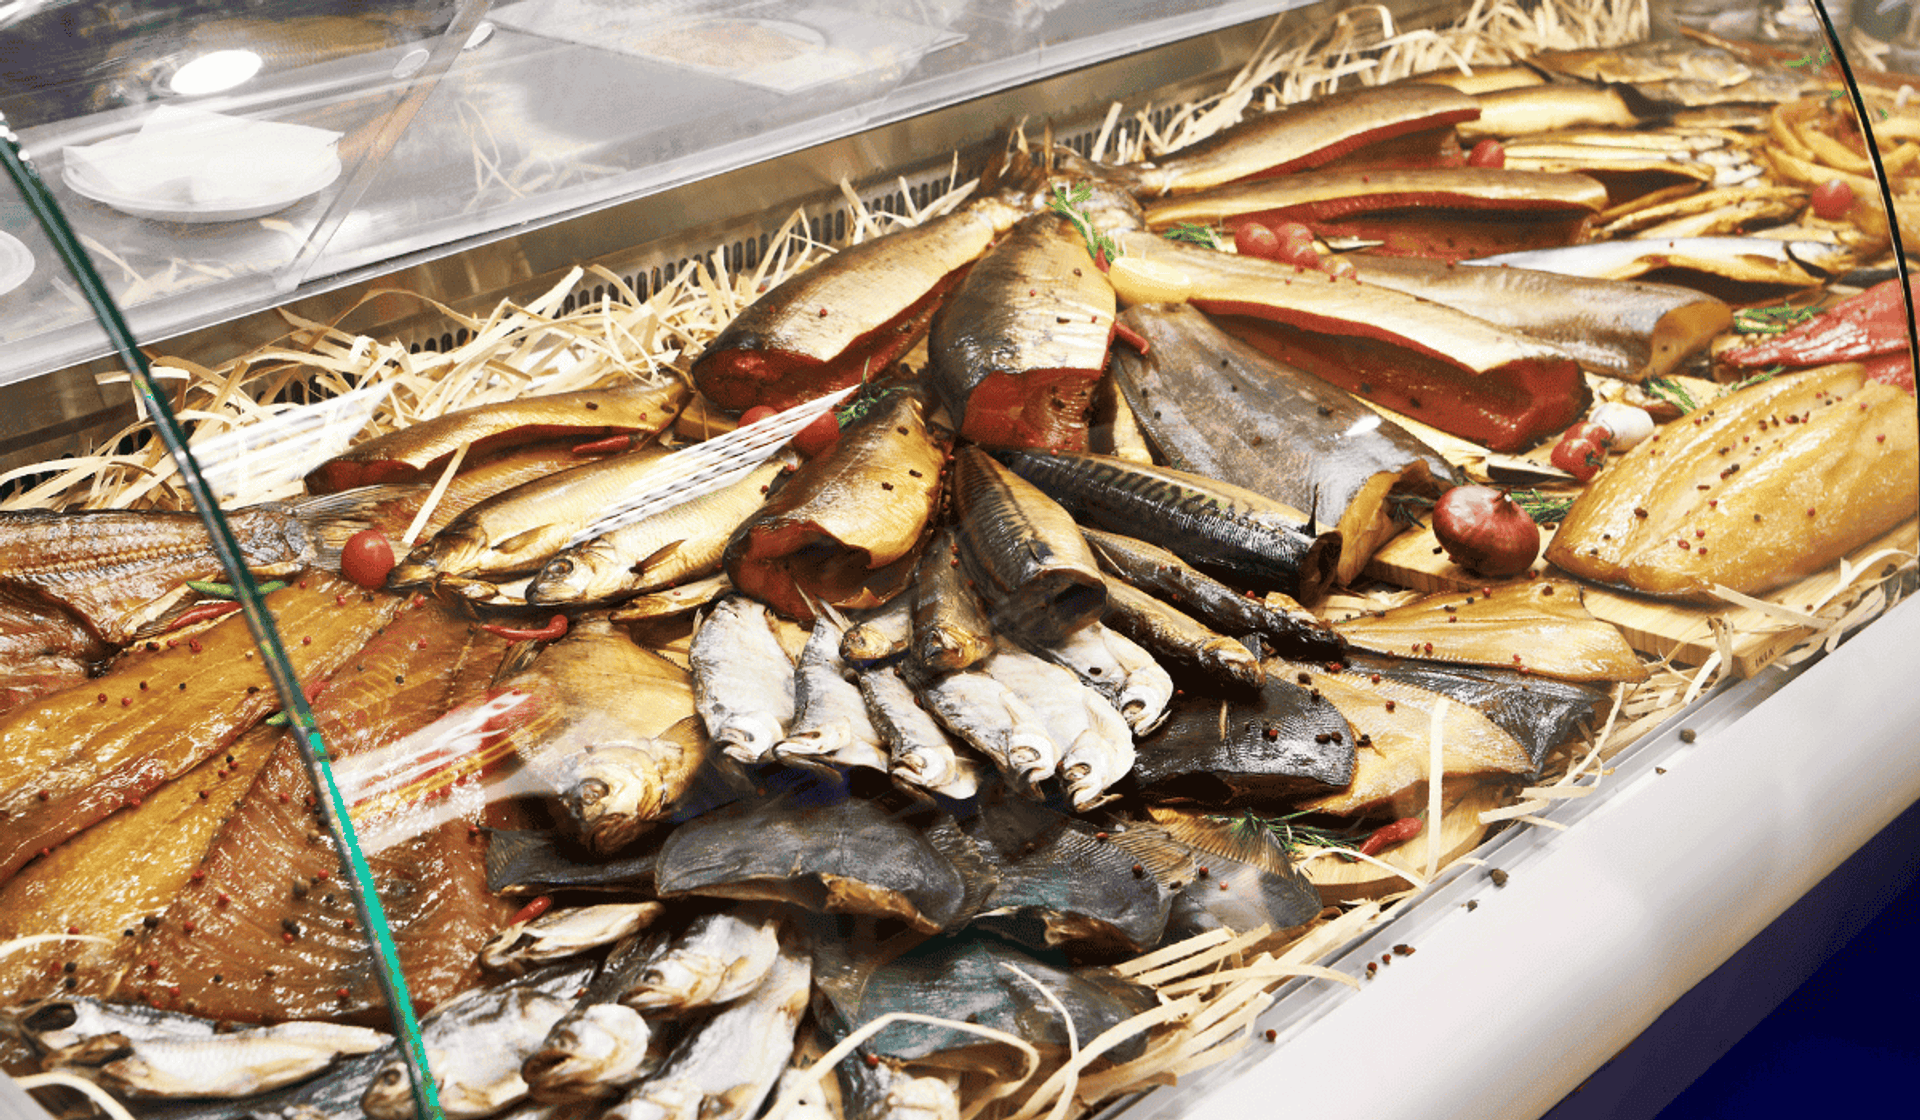 Polacy omijają szerokim łukiem, a jest zdrowsza niż inne ryby. Każdy powinien spróbować